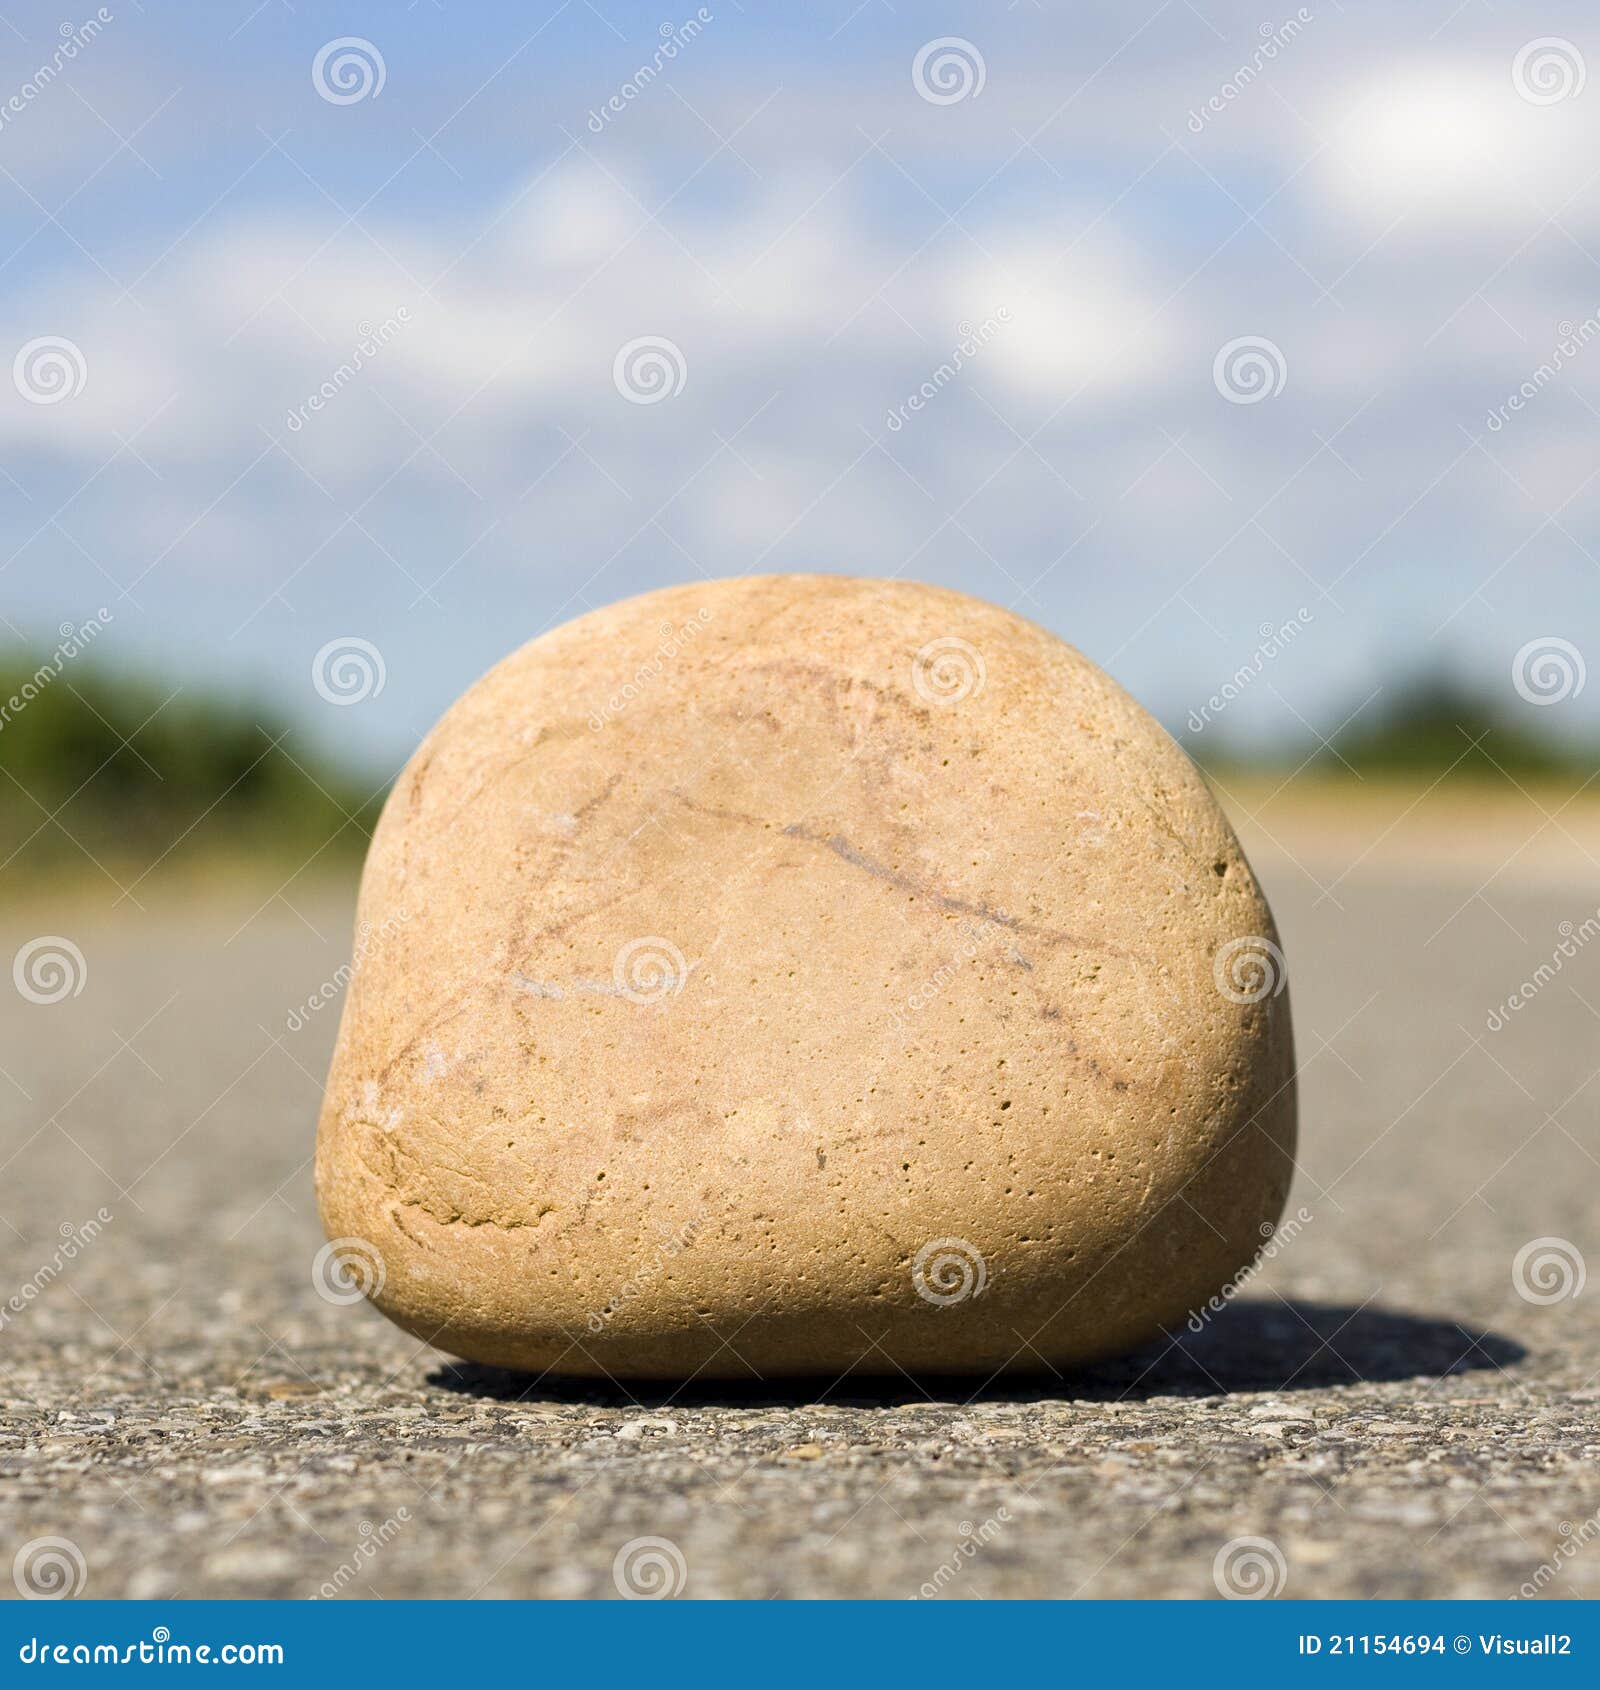 Image result for una piedra en el camino